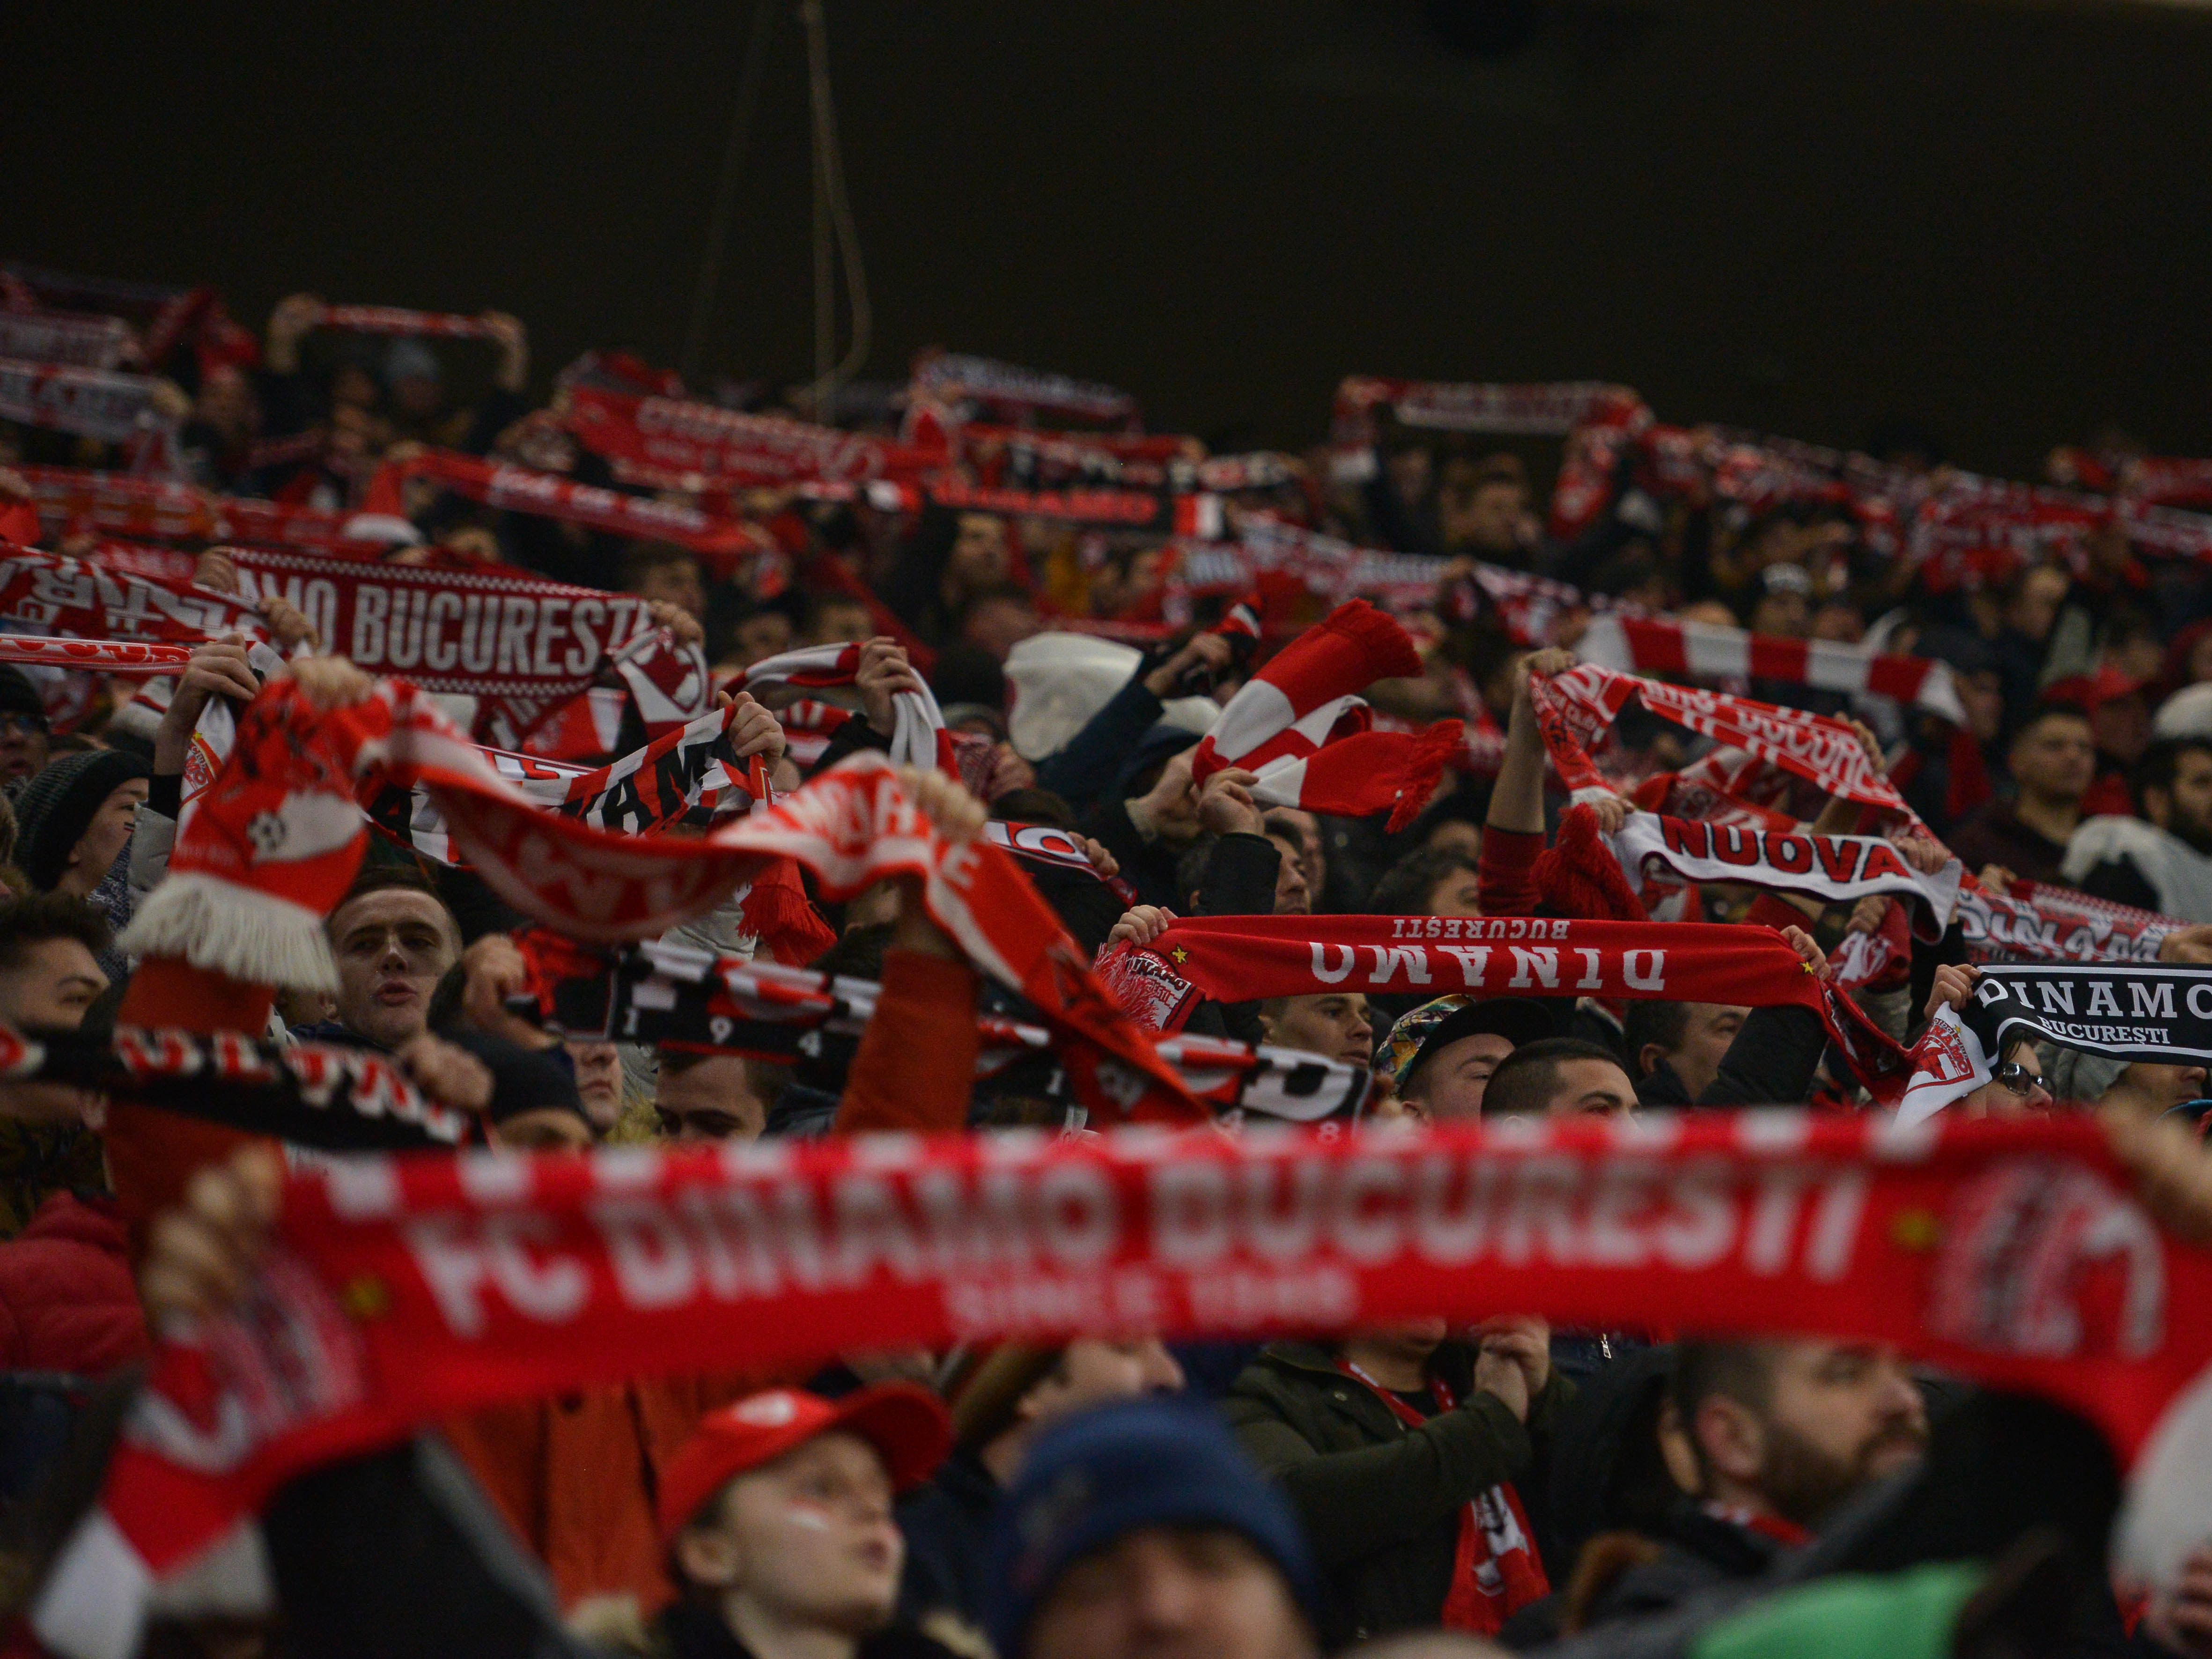 Dinamoviștii speră la victorie în derby! Câte bilete au vândut pentru marele meci cu FCSB de pe Arena Națională